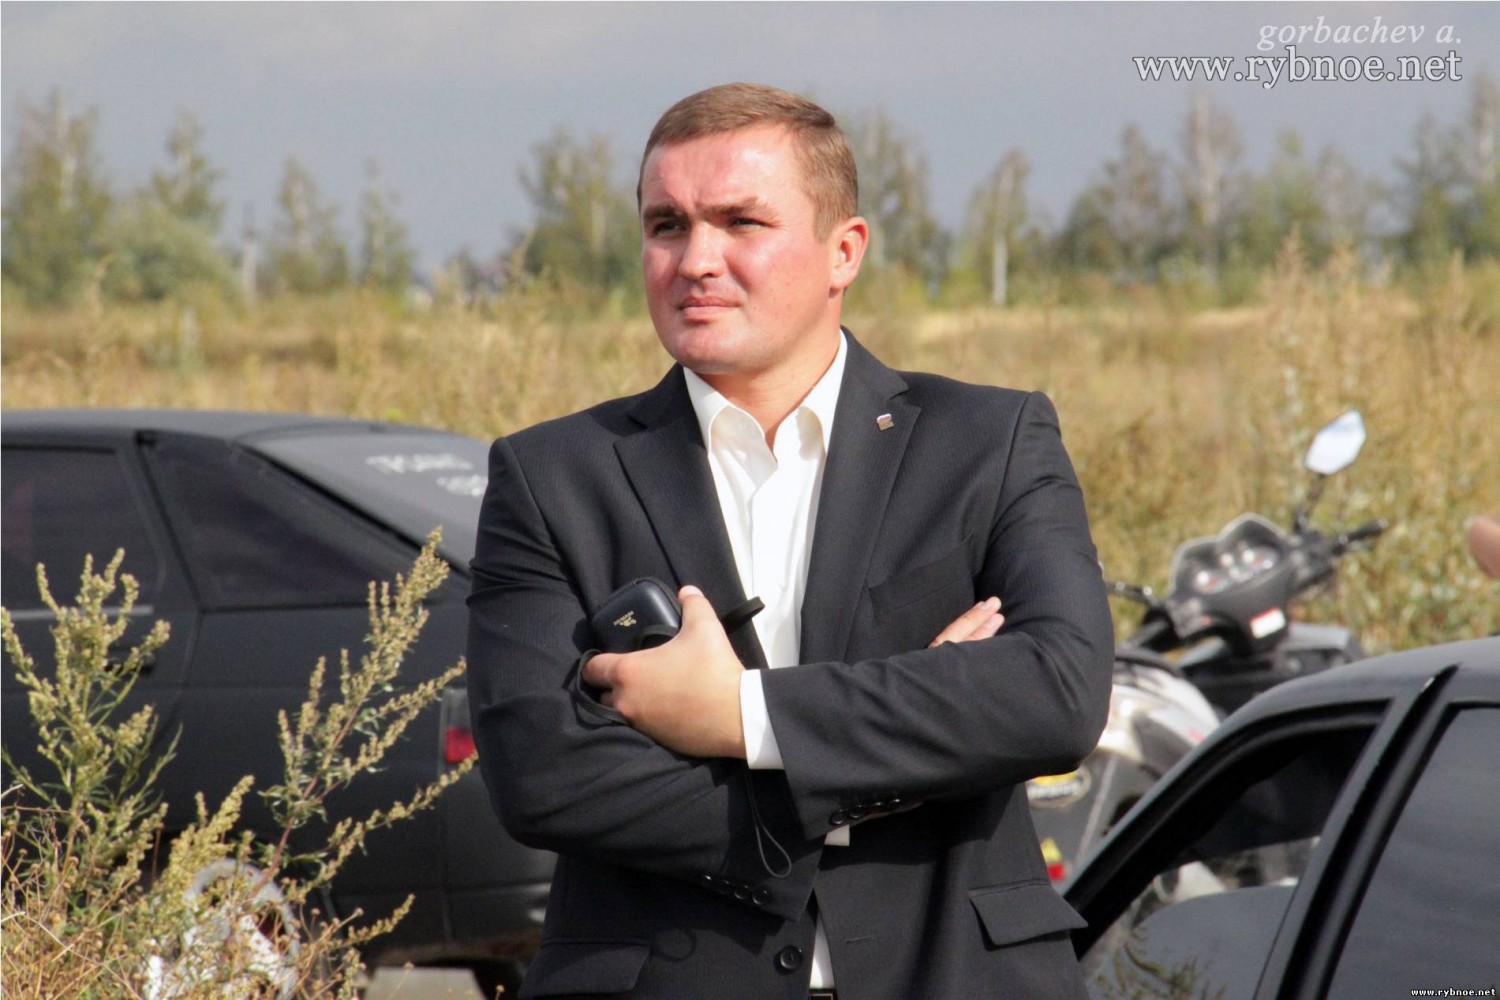 Бывшему мэру г. Рыбное предъявлено обвинение с подпиской о невыезде